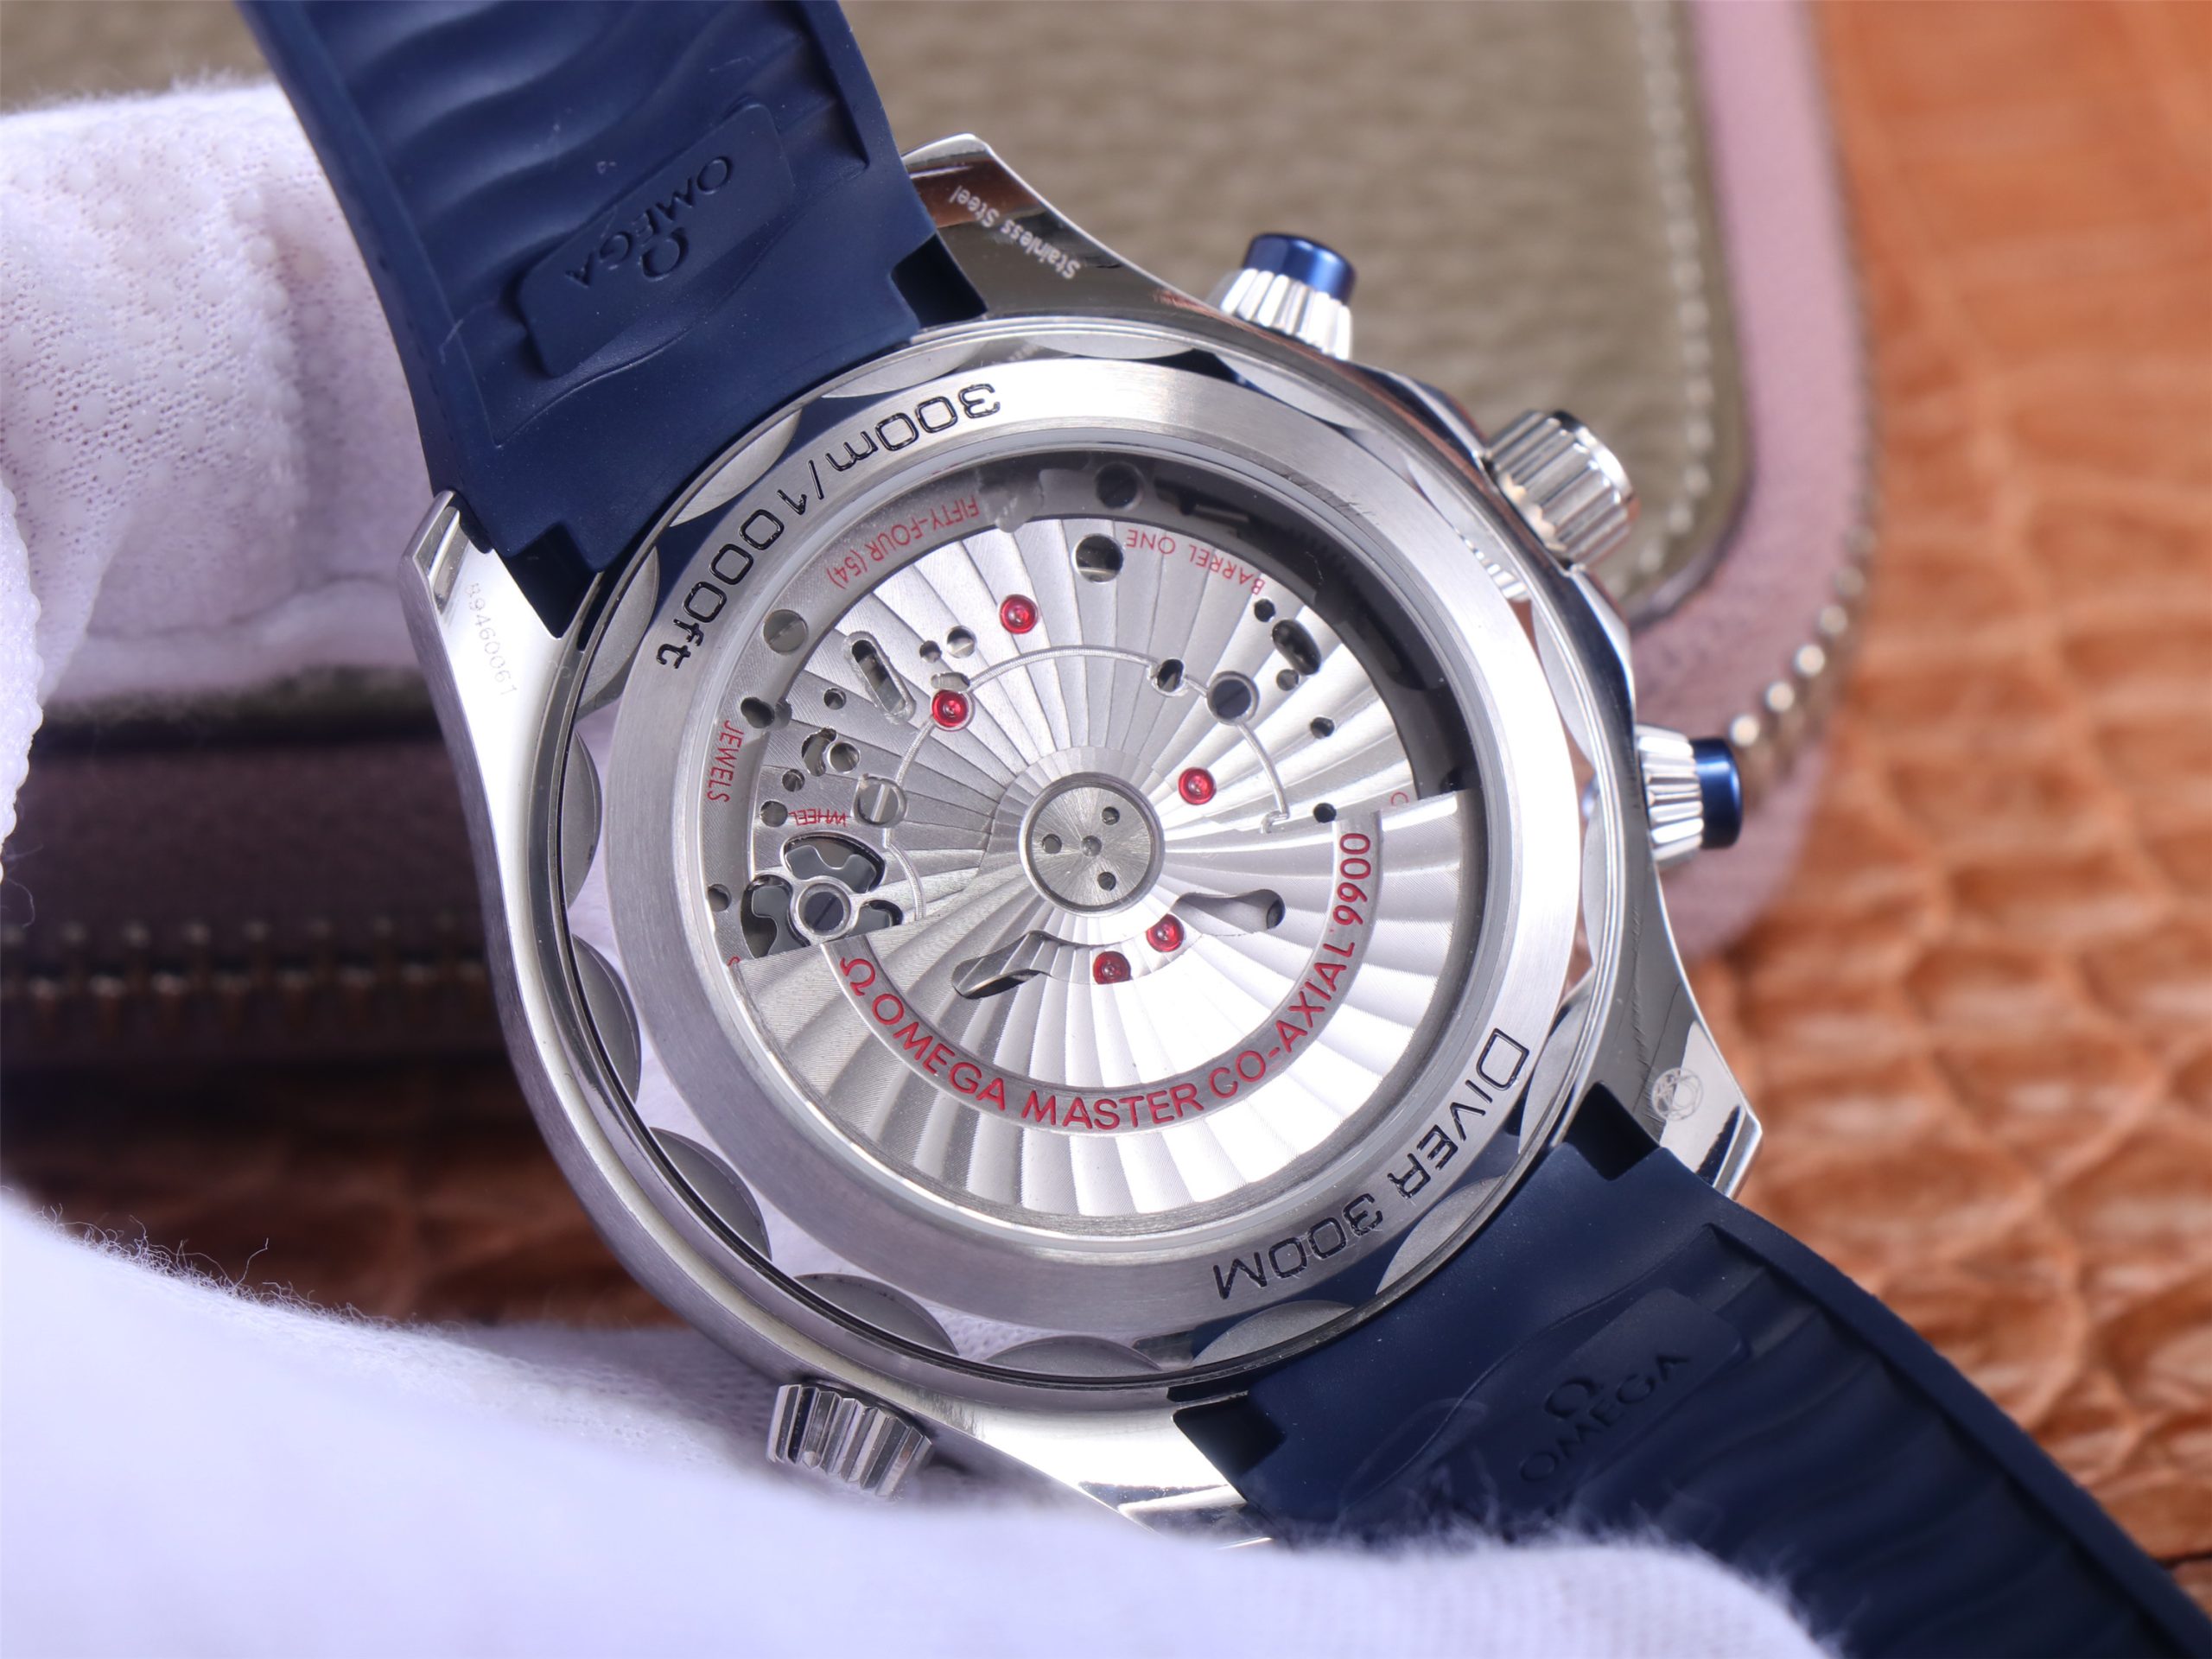 2023042601371617 scaled - um錶廠手錶歐米茄海馬一比一復刻錶 210.30.44.51.03.001￥4680 